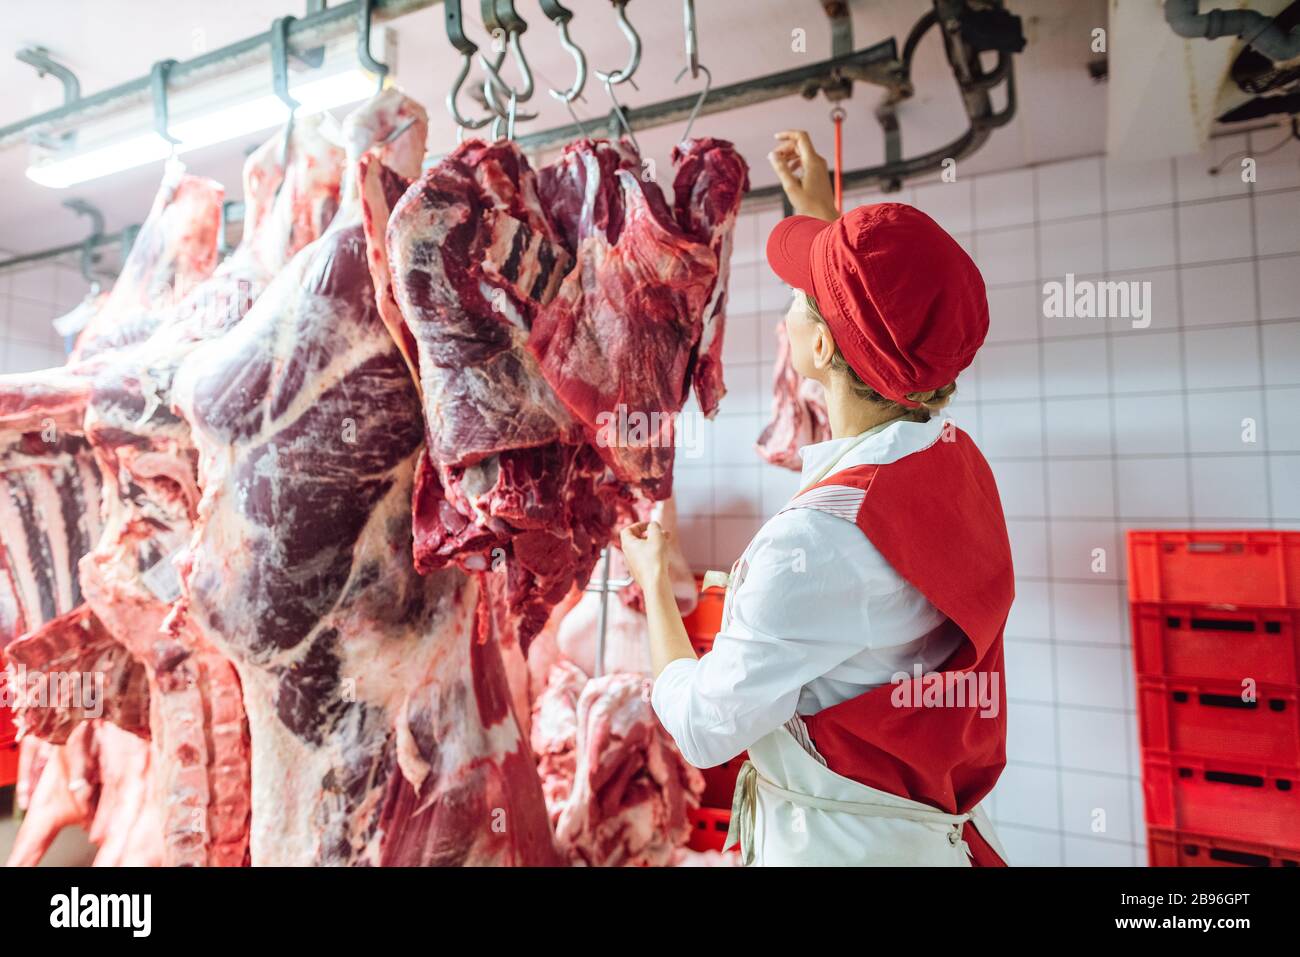 Carnicero mujer inspeccionando el pedazo de carne a procesar Foto de stock